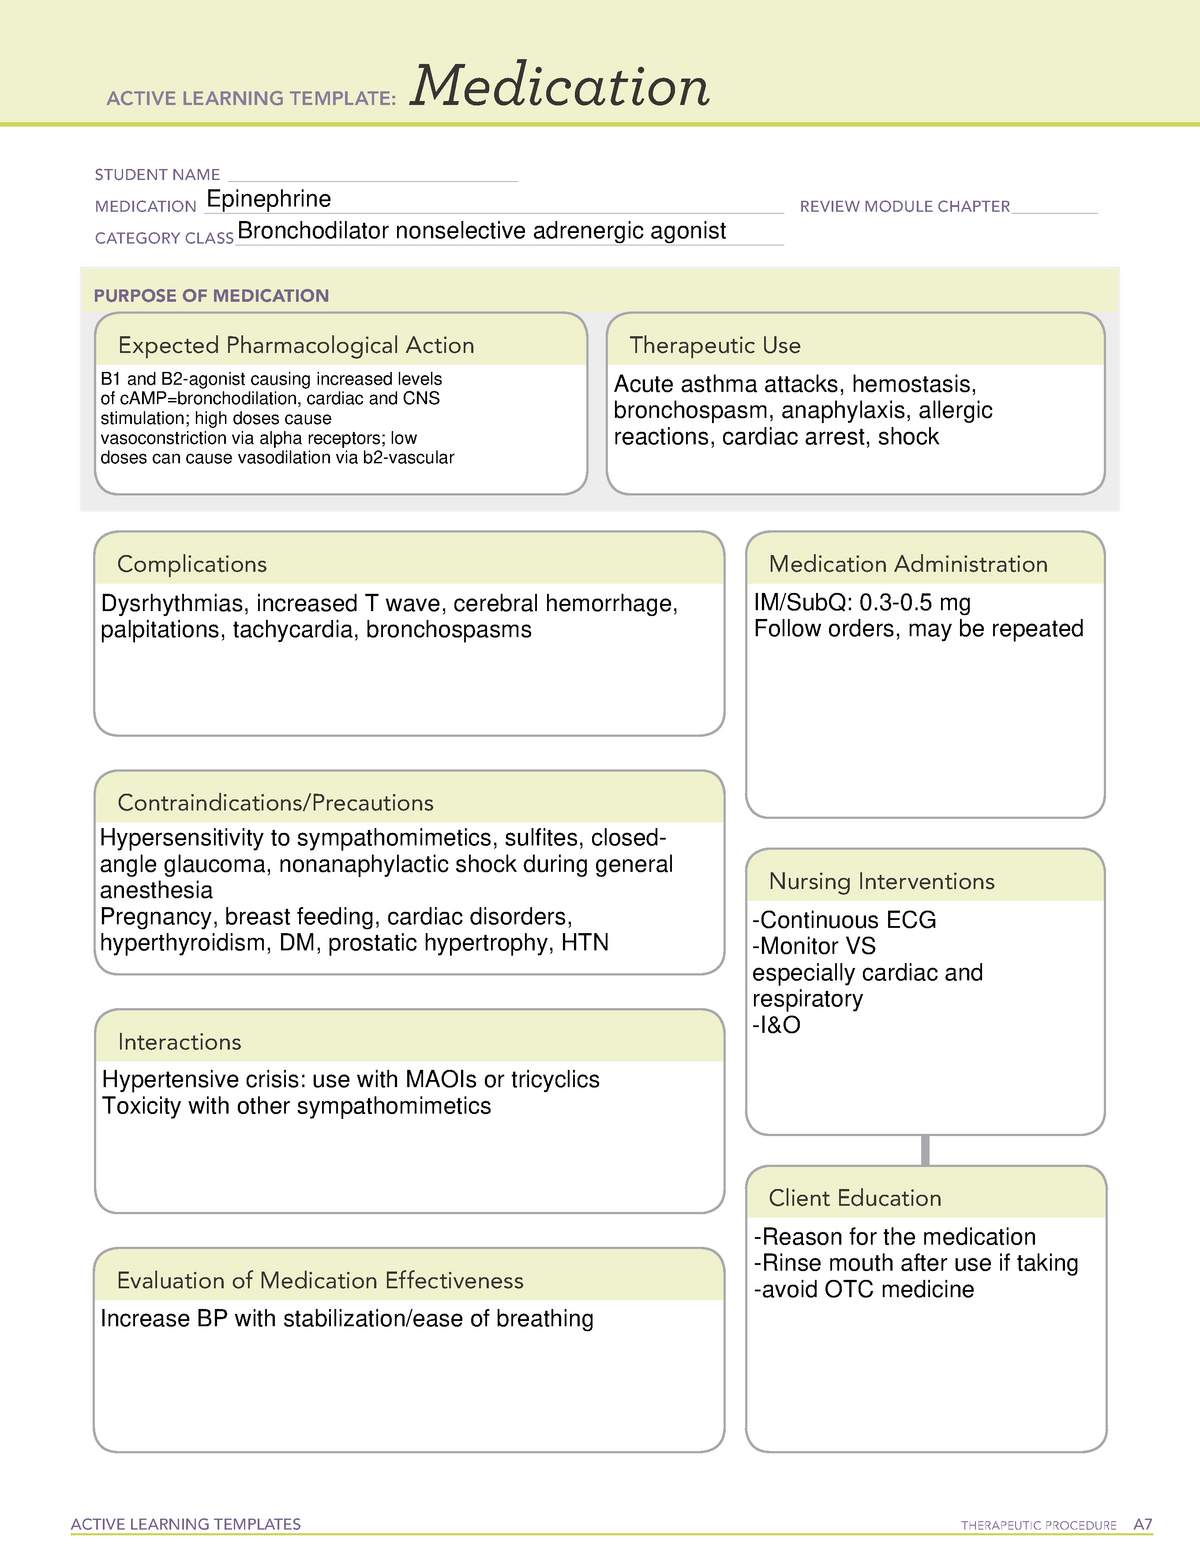 ati-medication-template-epinephrine